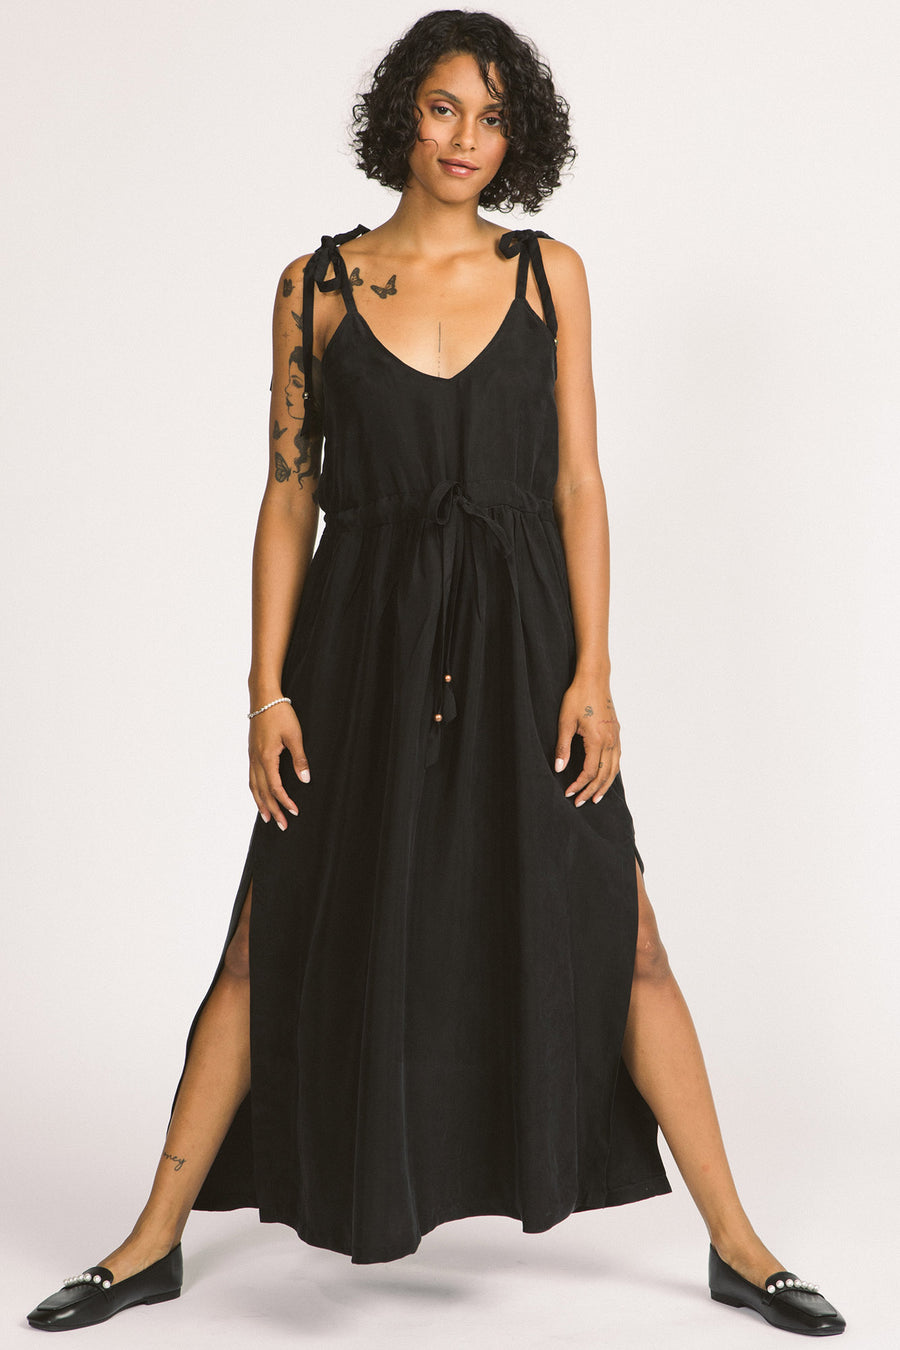 Woman wearing black Novalie dress by Allison Wonderland with adjustable shoulder straps and waist. 